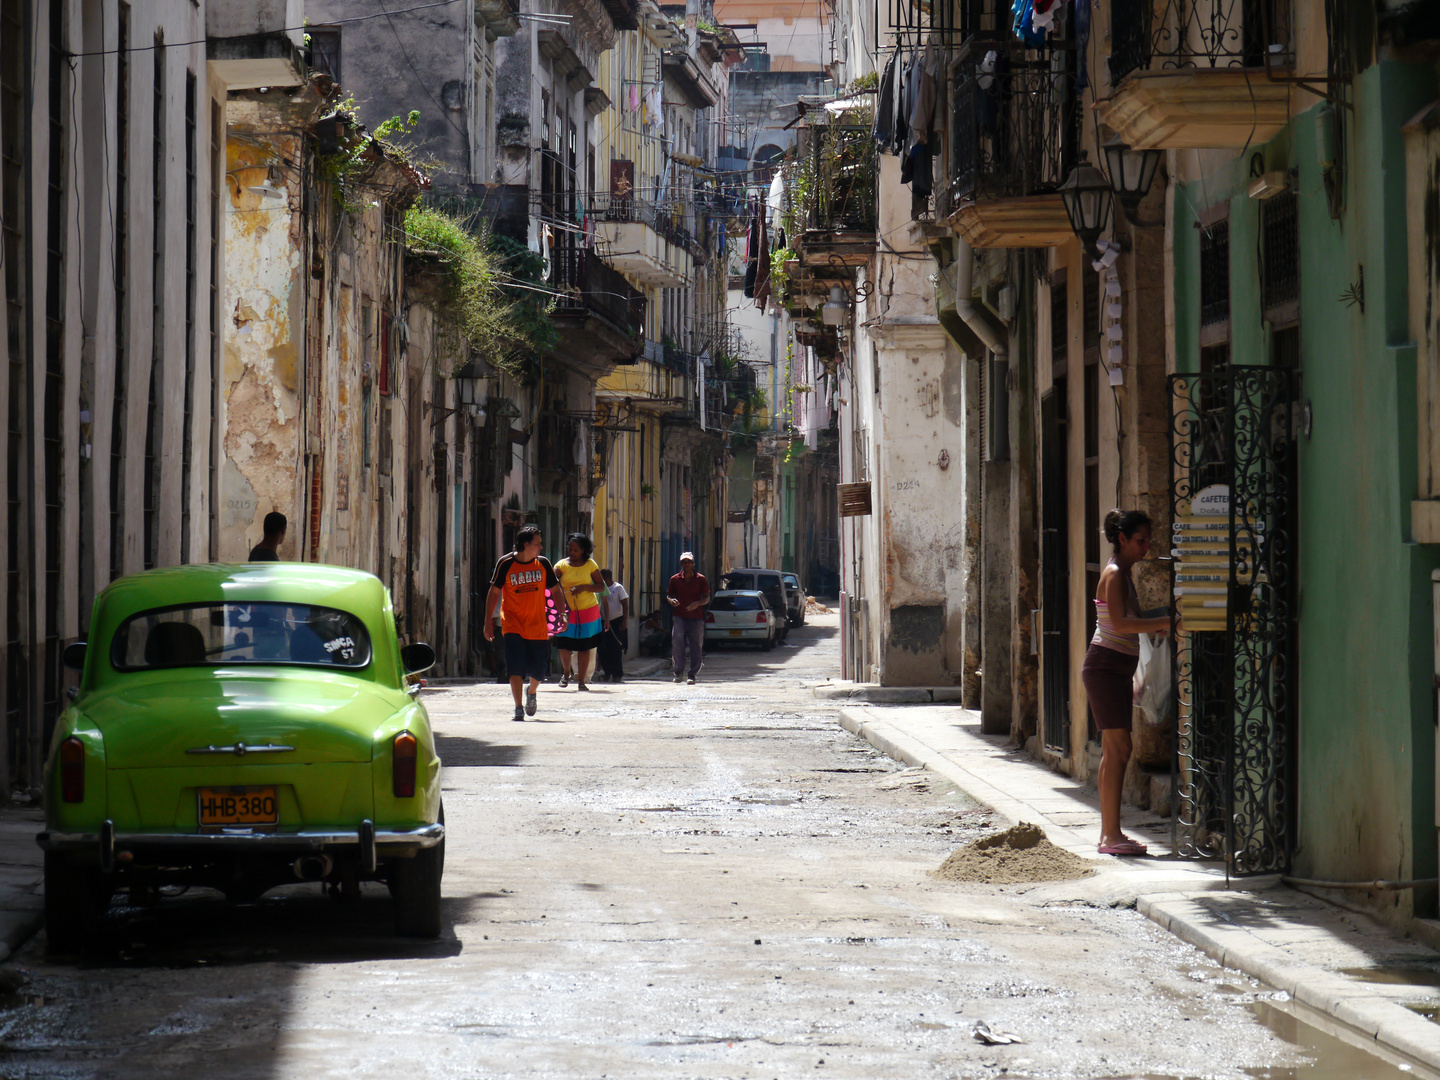 pitoresker Straßenzug - Hartes Leben in der Altstadt von Havanna